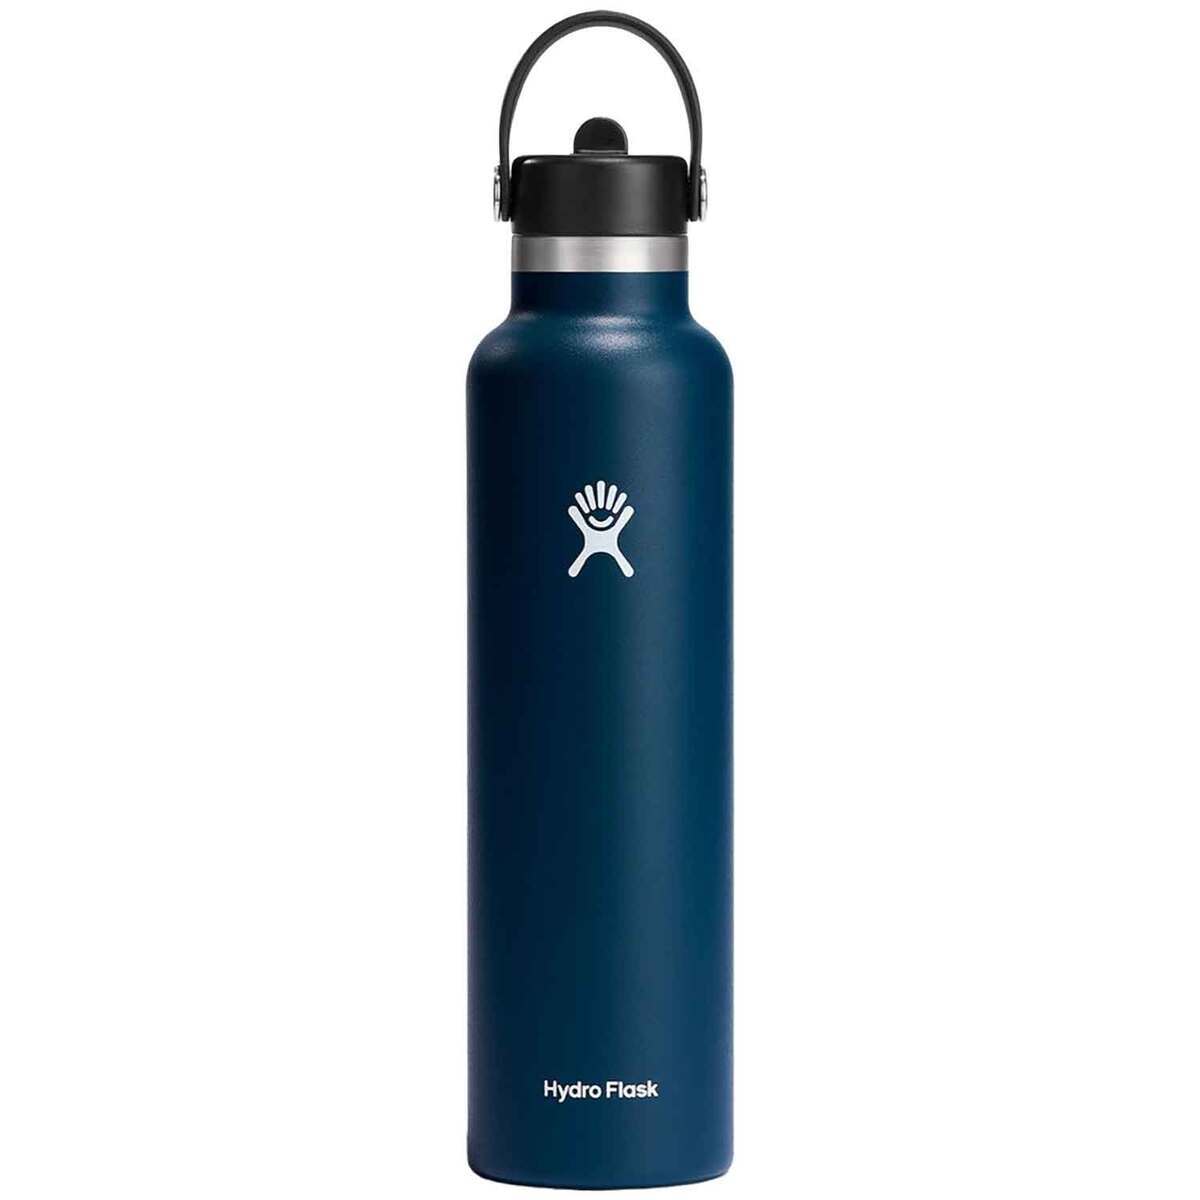 https://www.sportsmans.com/medias/hydro-flask-24oz-standard-mouth-insulated-bottle-with-flex-straw-cap-indigo-1743861-1.jpg?context=bWFzdGVyfGltYWdlc3wyNjMyMnxpbWFnZS9qcGVnfGg0ZS9oZDYvMTA3Mjk2MTU5ODI2MjIvMTc0Mzg2MS0xX2Jhc2UtY29udmVyc2lvbkZvcm1hdF8xMjAwLWNvbnZlcnNpb25Gb3JtYXR8YmIwYzE5NmEwZDYxOGI2MTVlNTcxZTRhNGEyNjcyMzMwNDE2MGZiNTdjNjMyM2YzZDgyOThhNjJhMDI5ZTNhNA